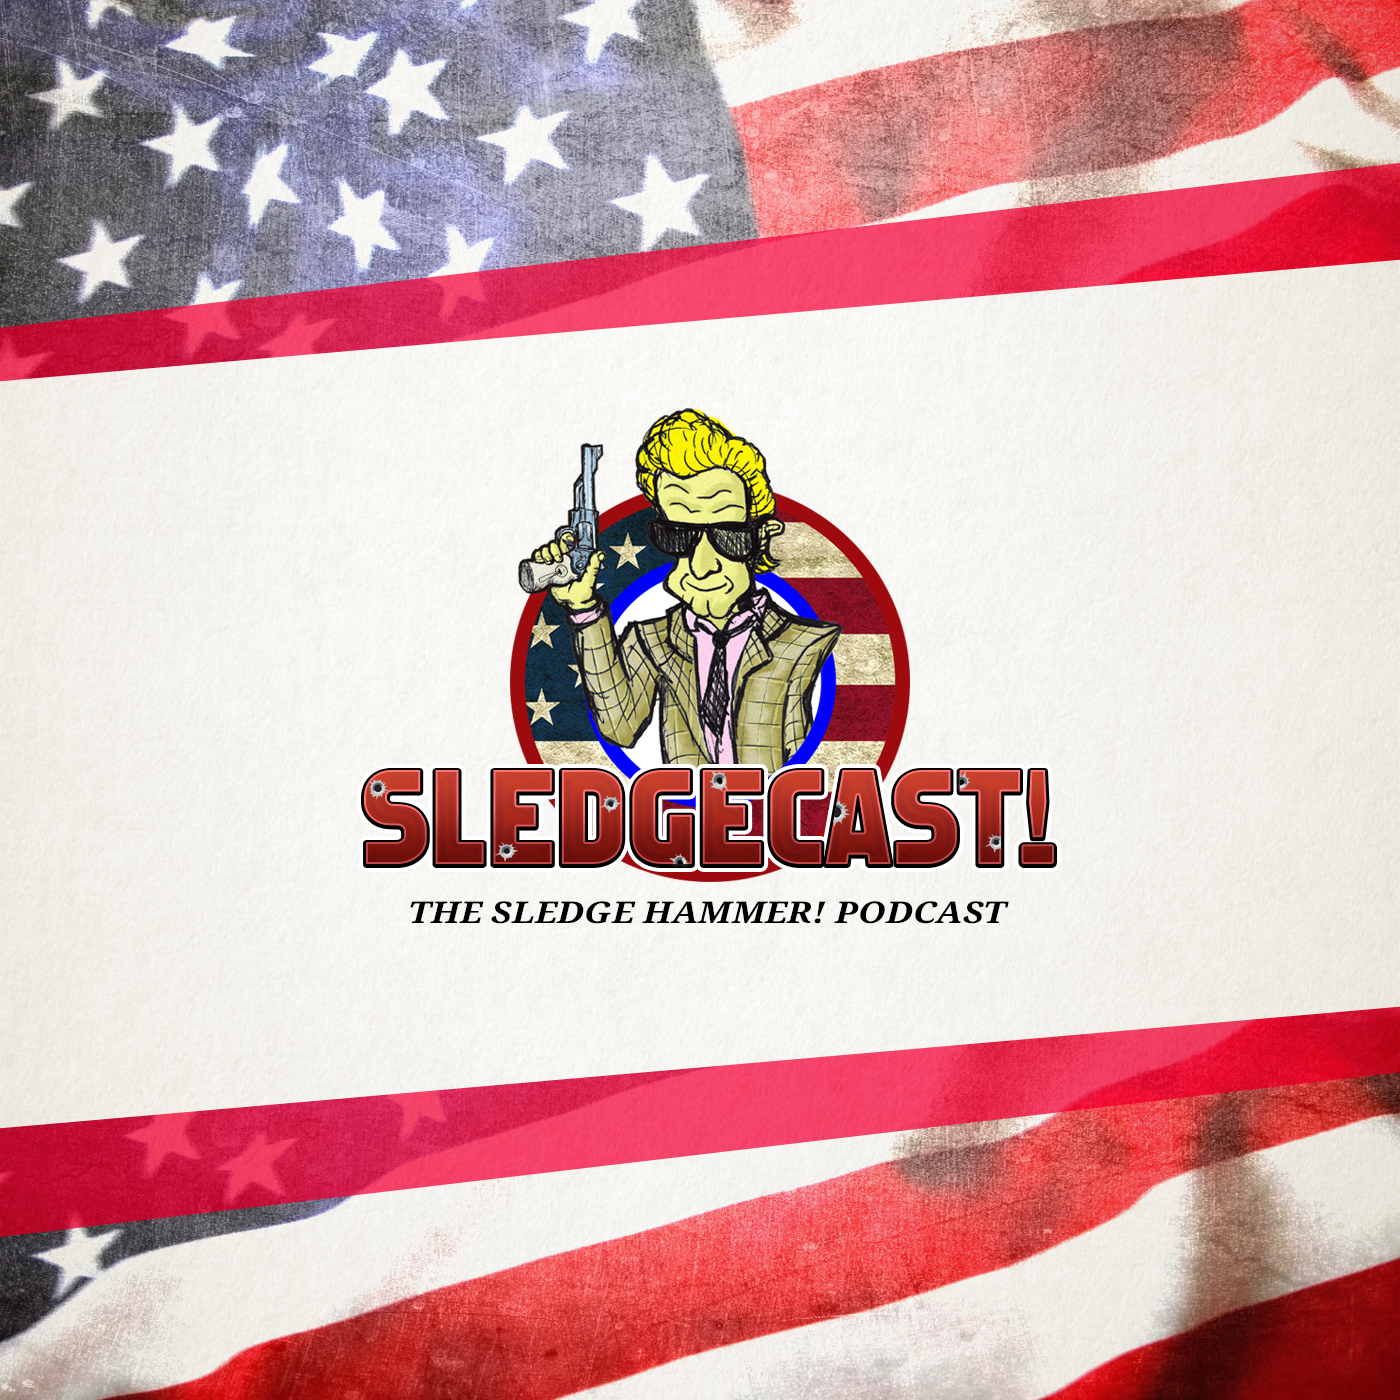 Sledgecast: The Sledge Hammer! Podcast